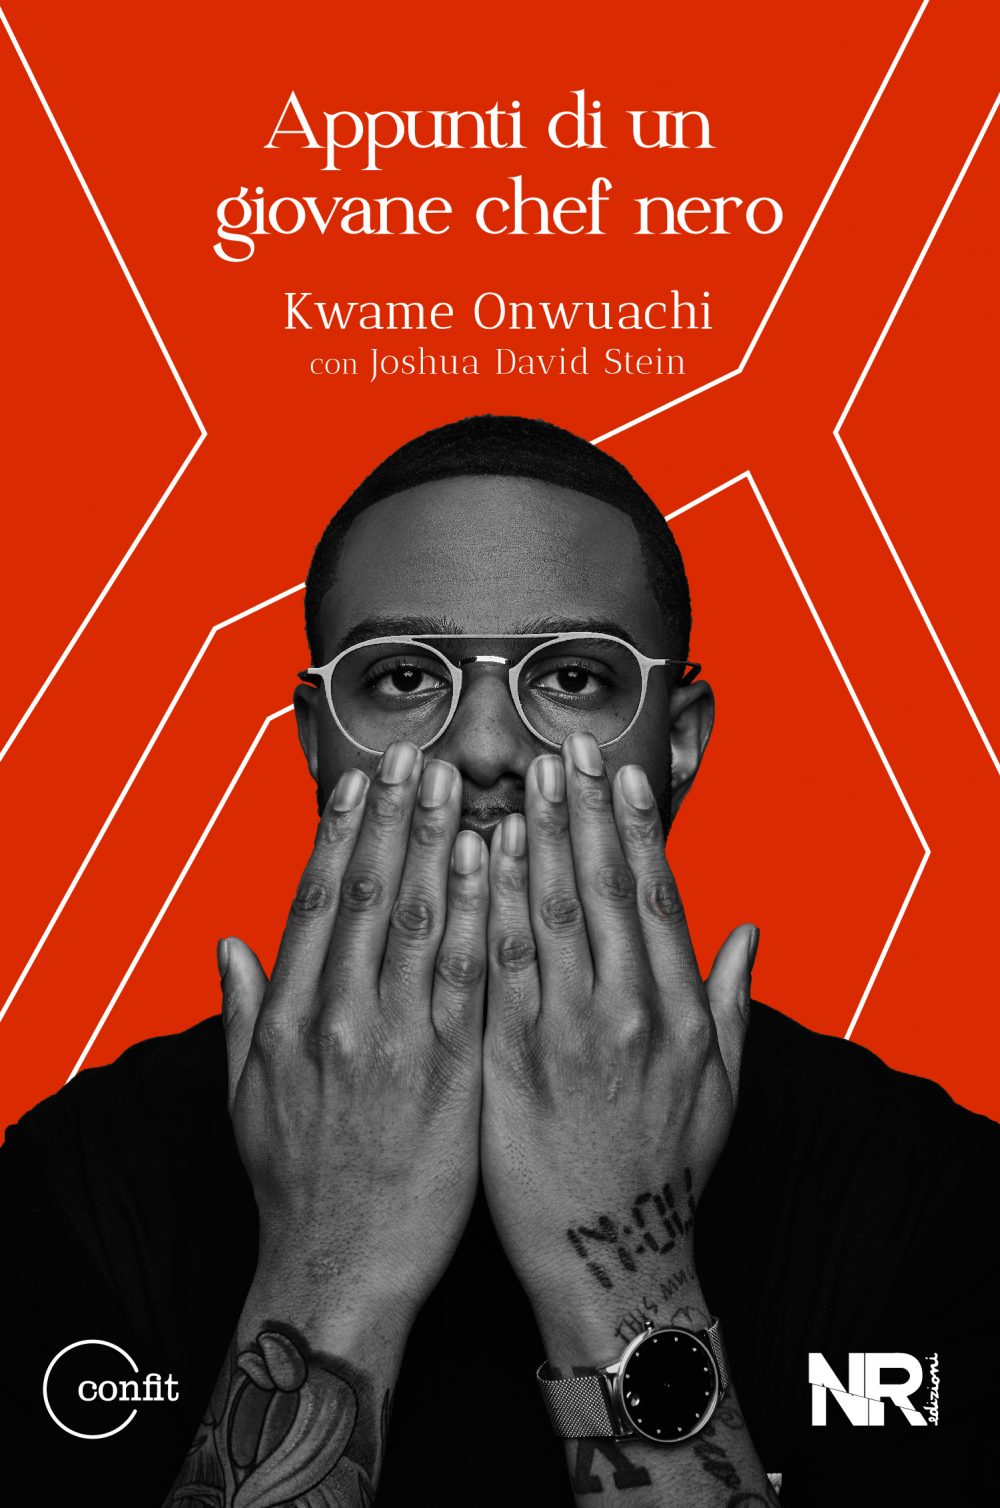 Appunti di un giovane chef nero – Kwame Onwuachi